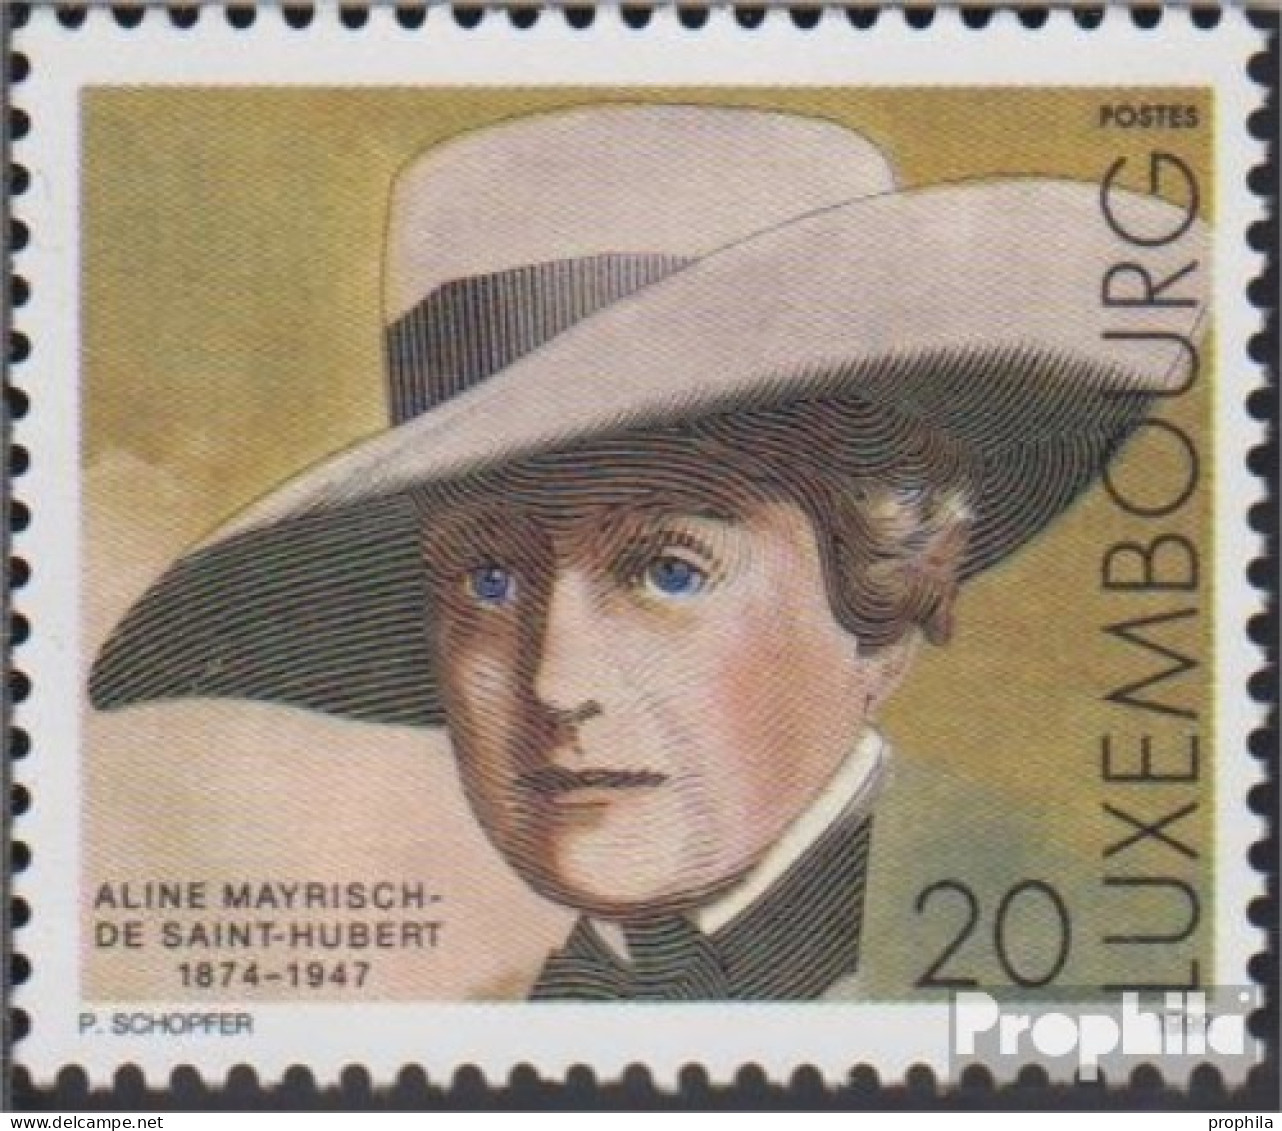 Luxemburg 1480 (kompl.Ausg.) Postfrisch 1999 Aline Mayrisch-de Saint-Hubert - Ungebraucht